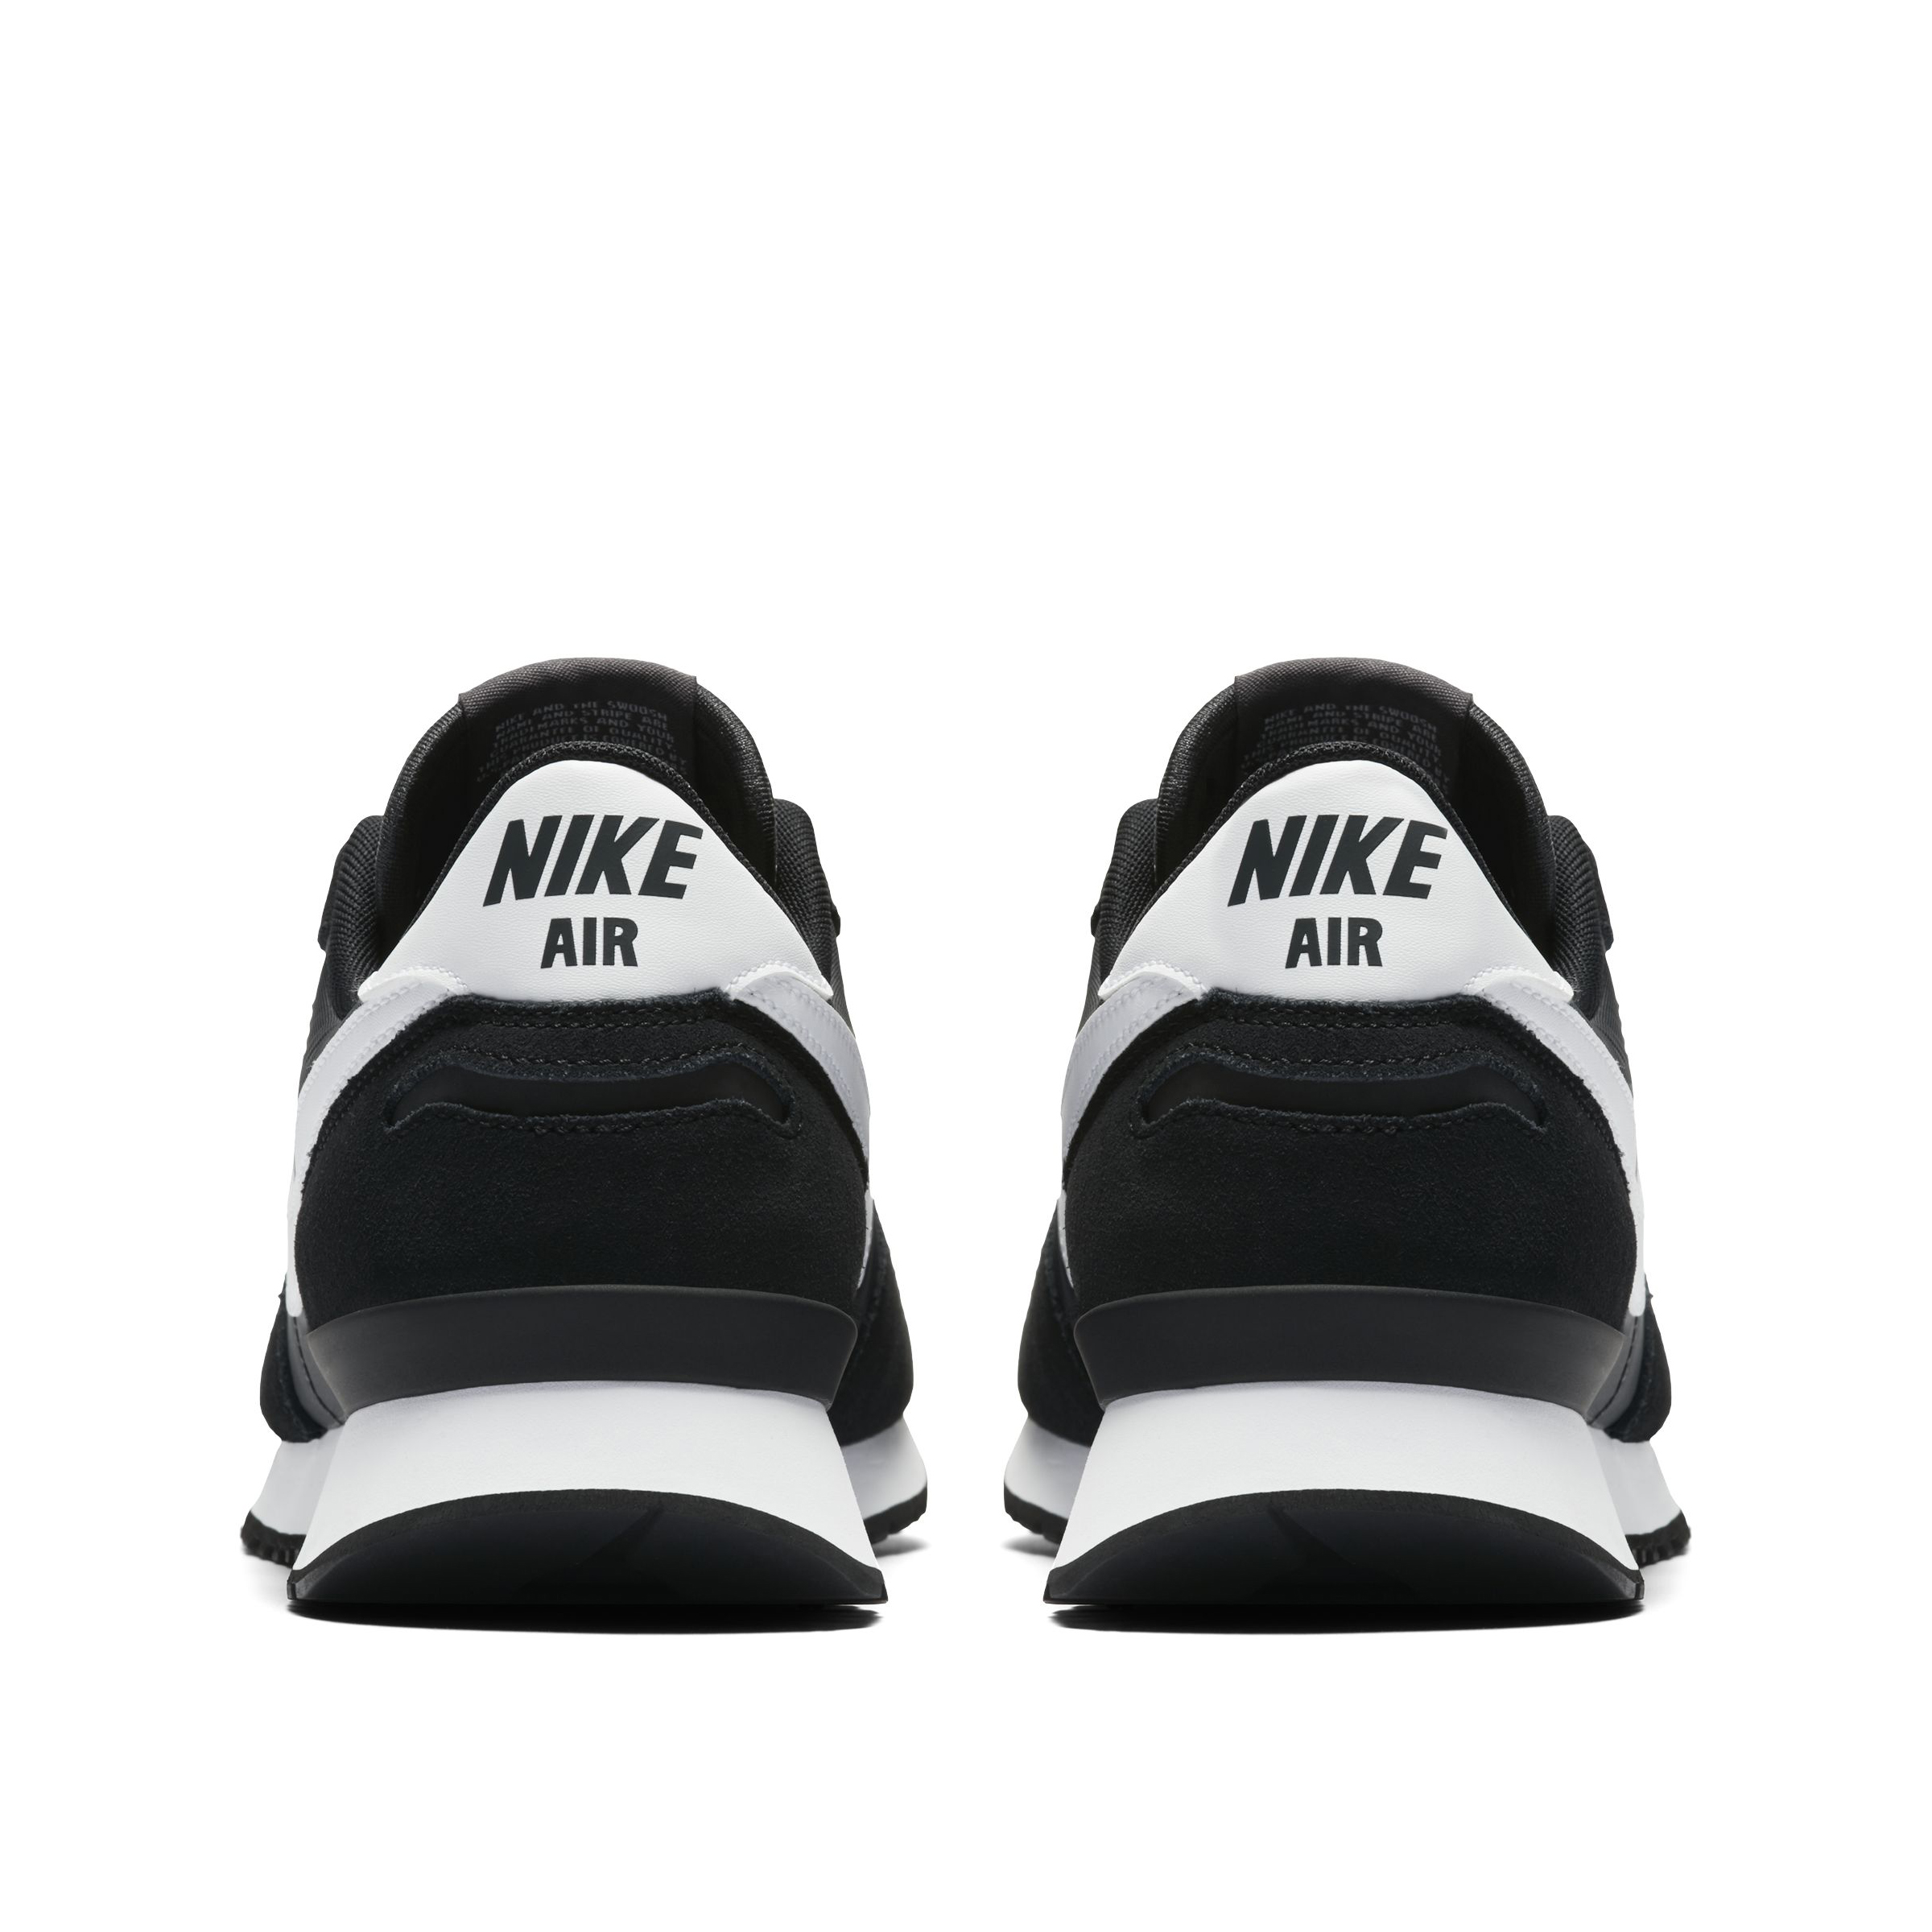 Nike Air Vortex 903896-010 